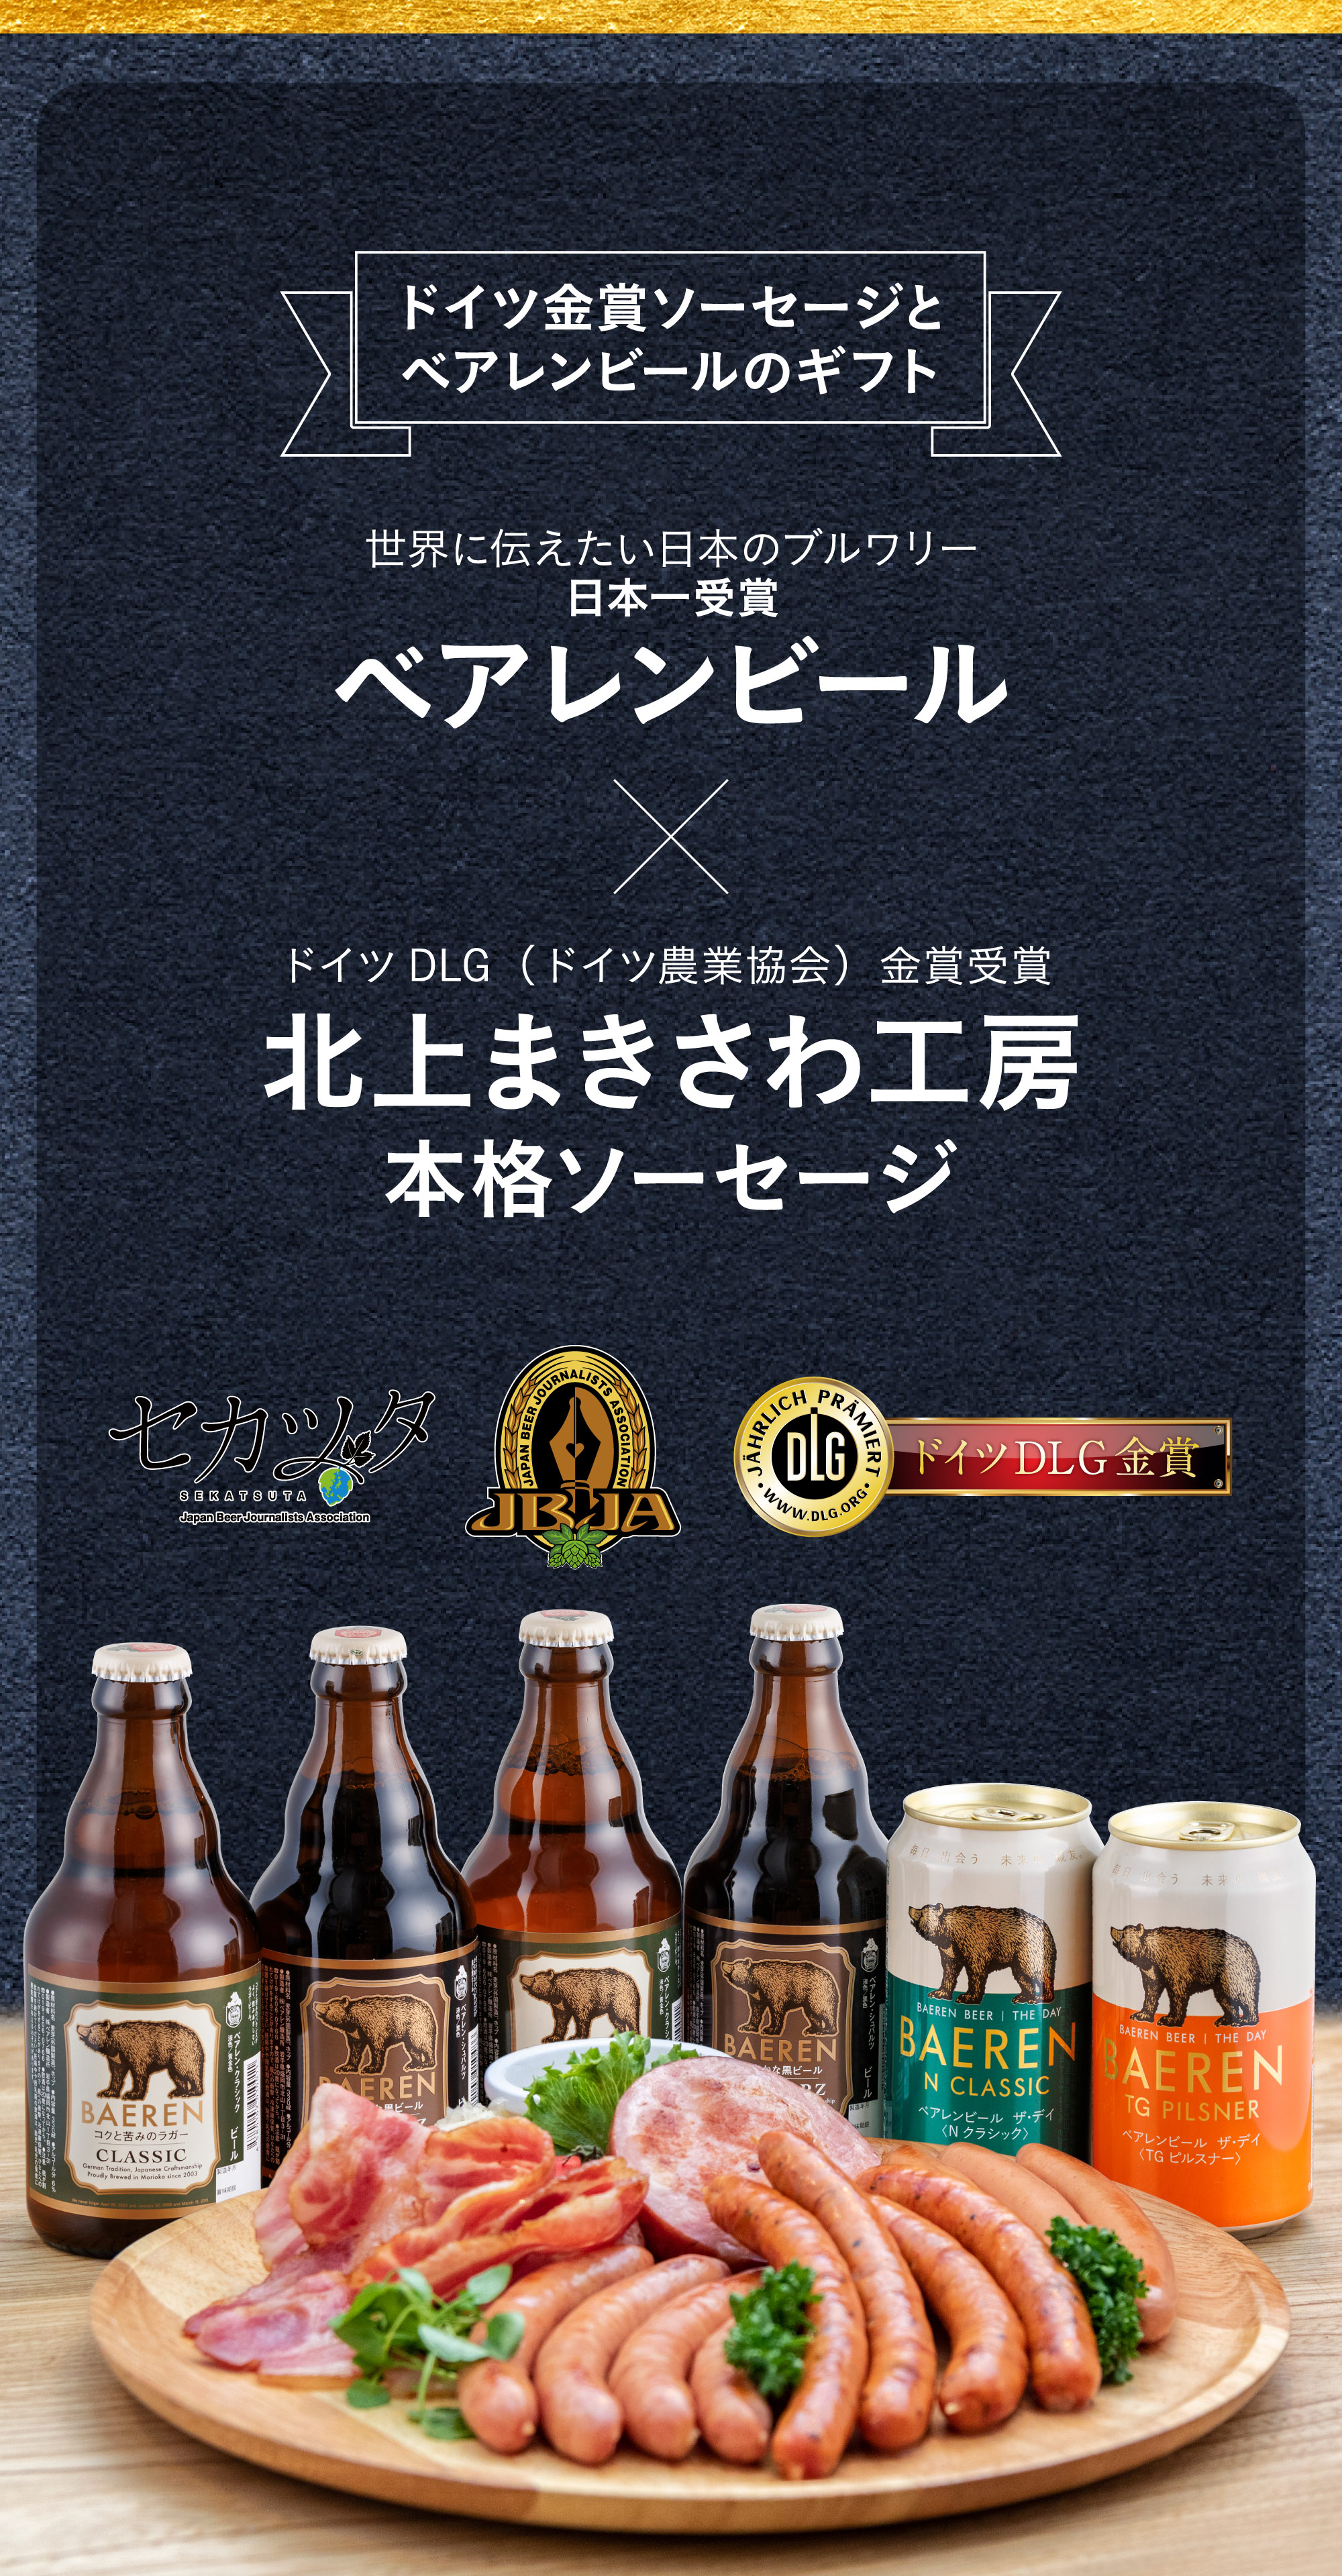 ドイツ金賞受賞ソーセージとベアレンビールのギフト 世界に伝えたい日本のブルワリー日本一受賞のベアレンビールとドイツDLG（ドイツ農業協会）金賞受賞の北上まきさわ工房本格ソーセージ